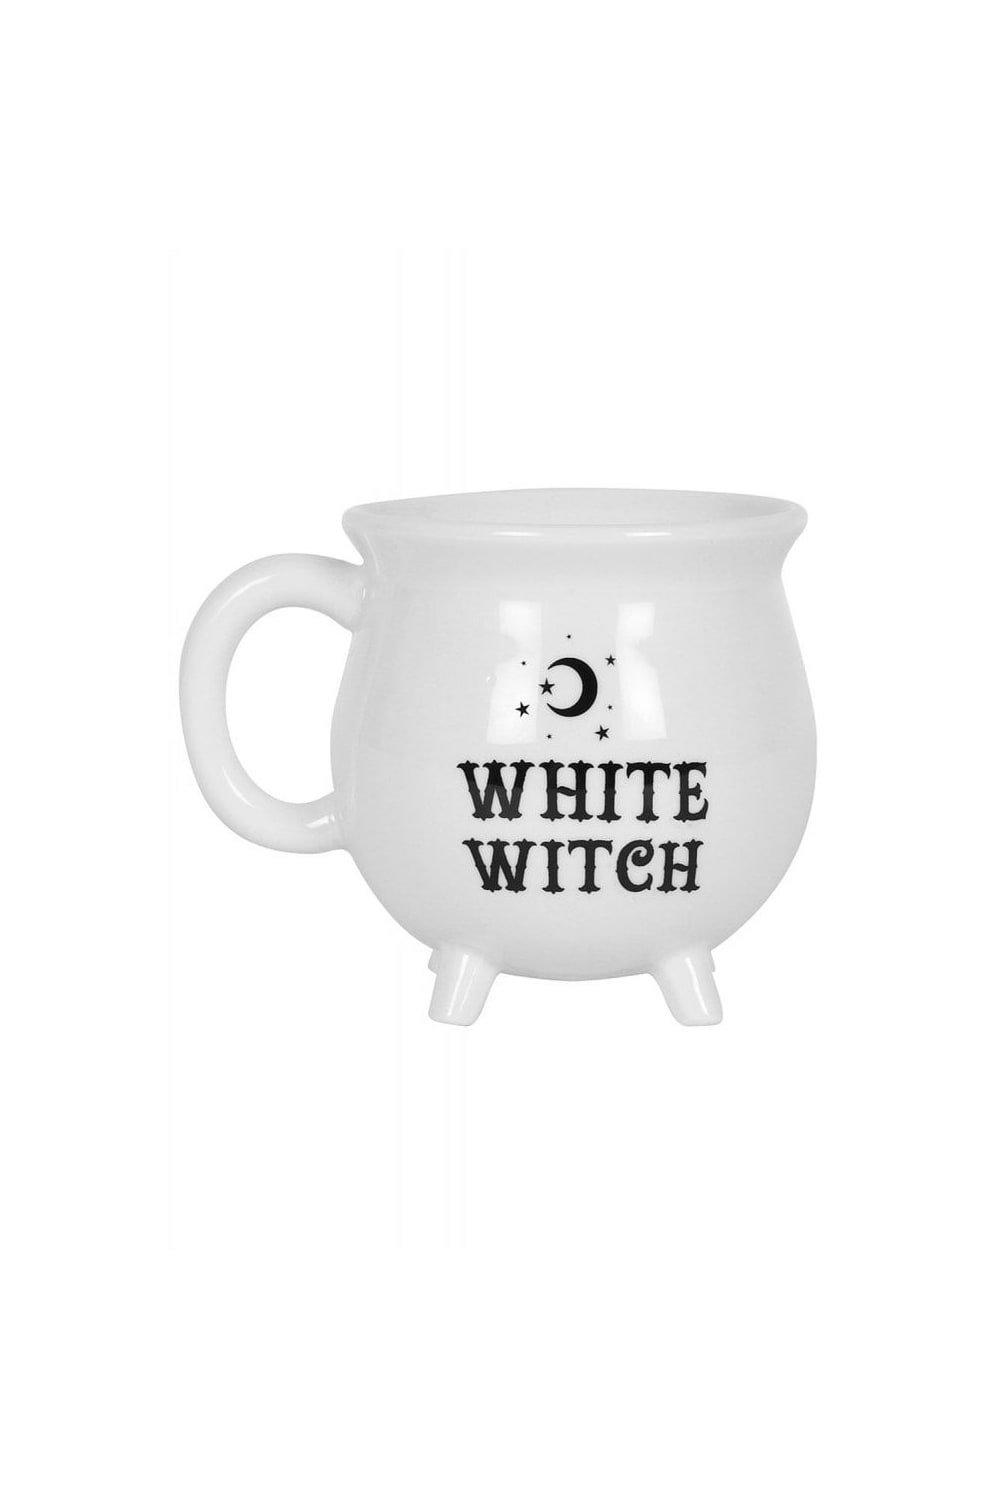 Photos - Mug / Cup Something Different White Witch Cauldron Mug 